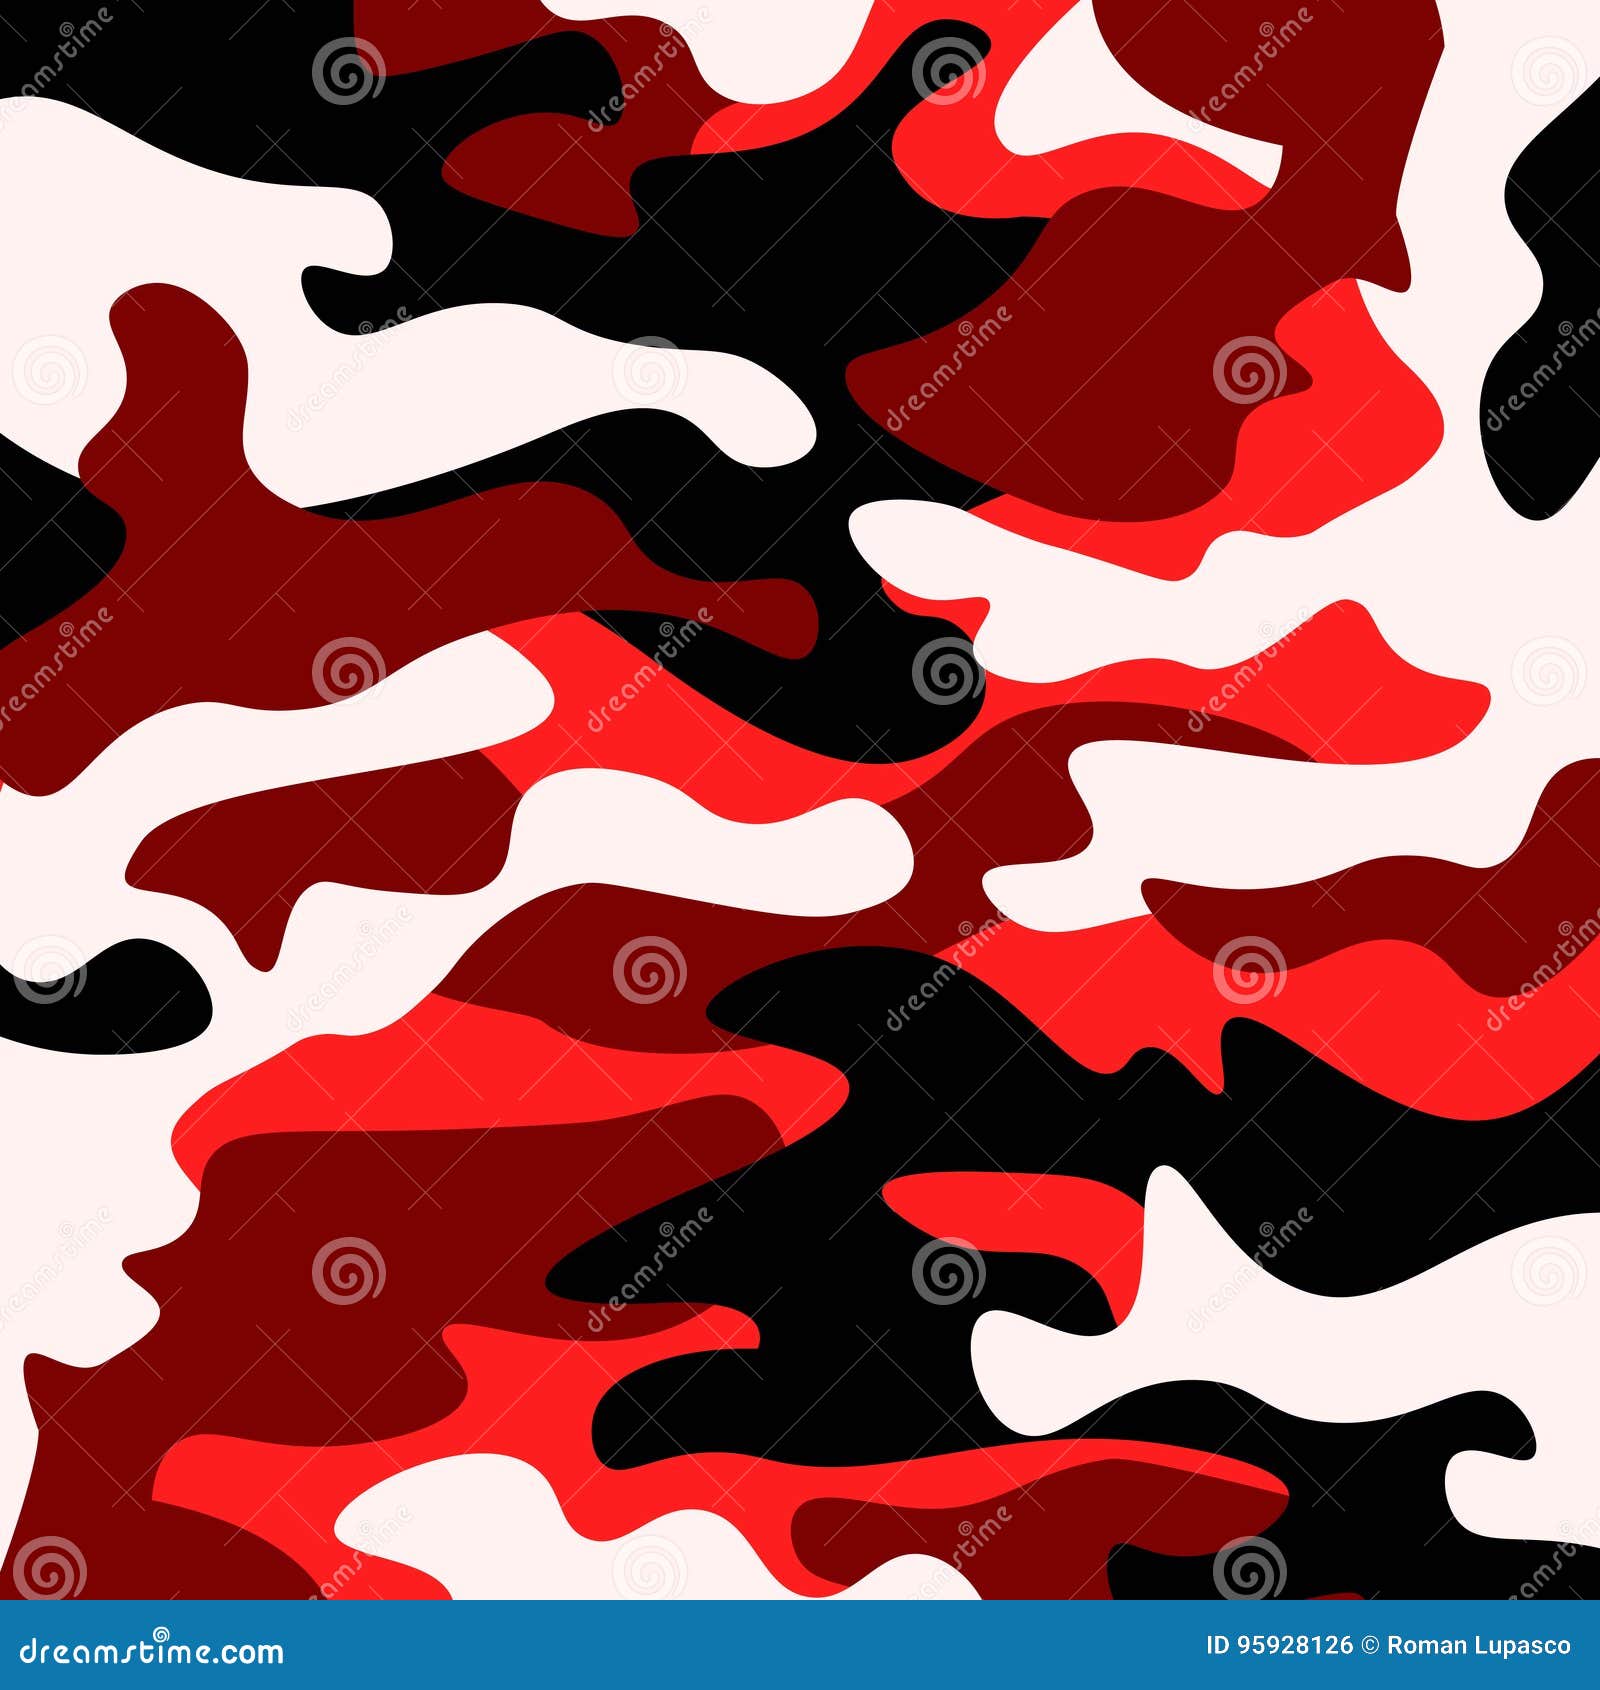 Camouflage Pattern Background. Classic Clothing Style Masking Camo ...